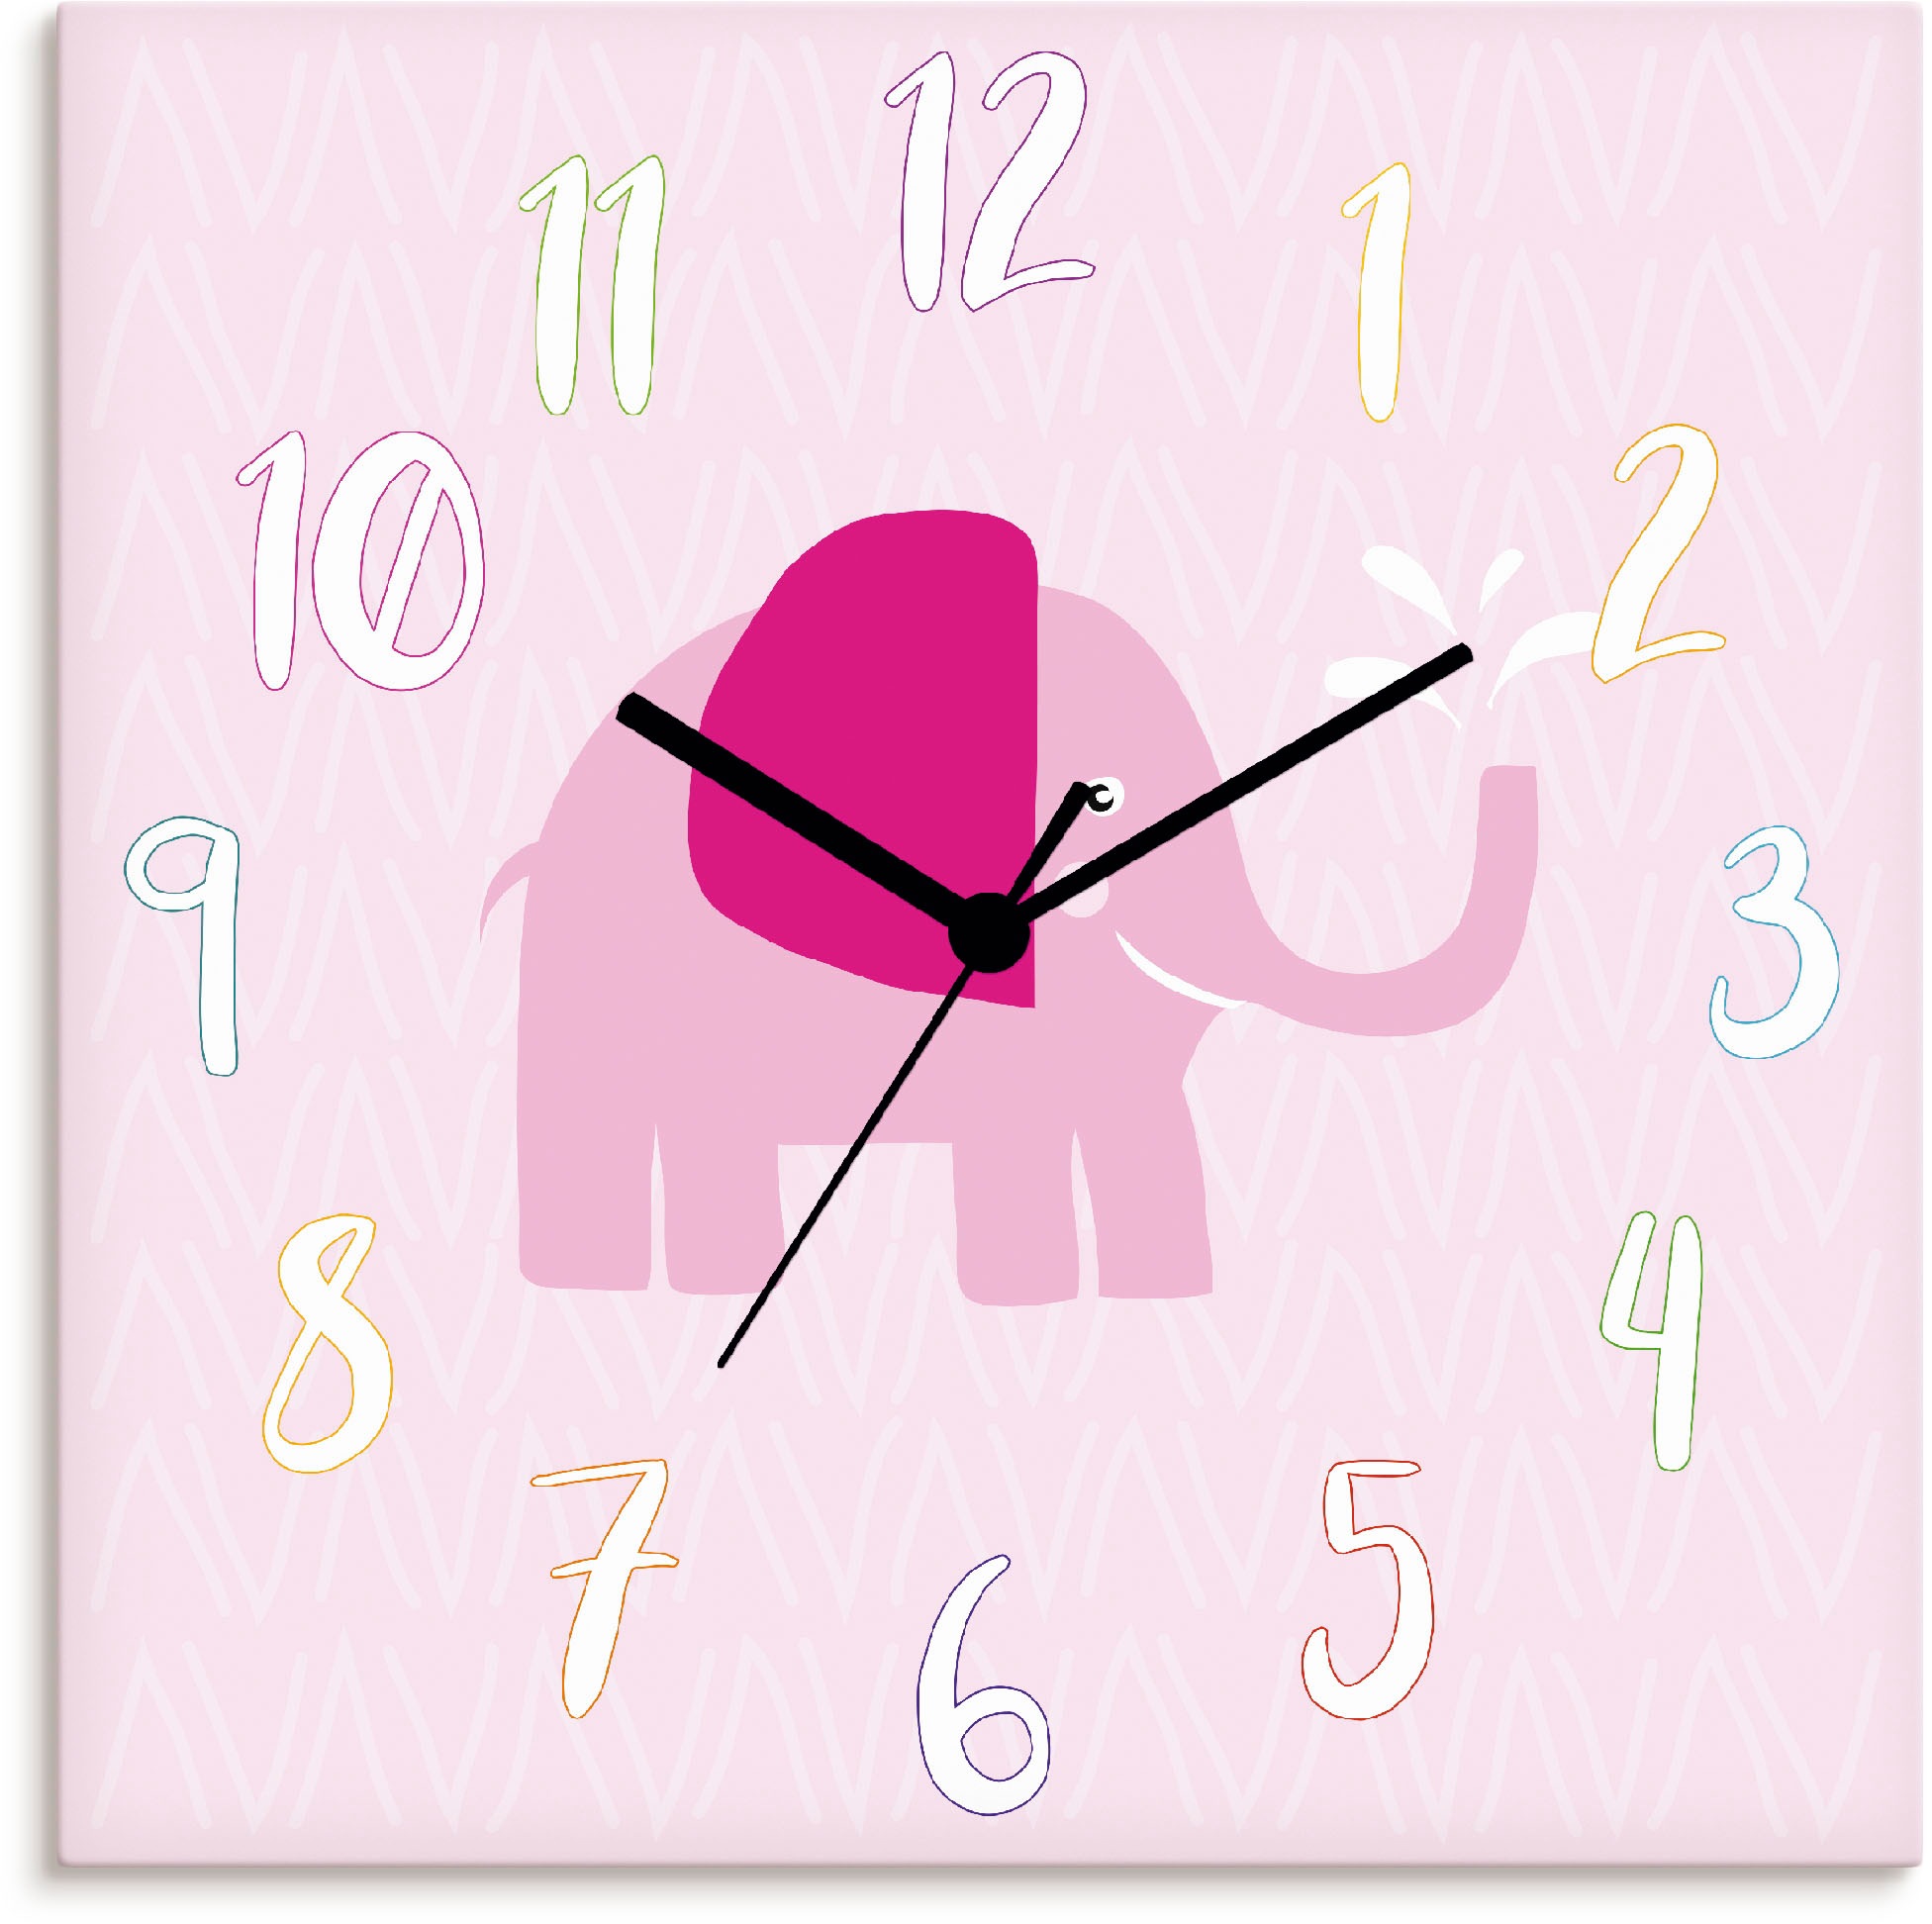 Artland Wanduhr »Elefant auf rosa«, wahlweise mit Quarz- oder Funkuhrwerk, lautlos ohne Tickgeräusche